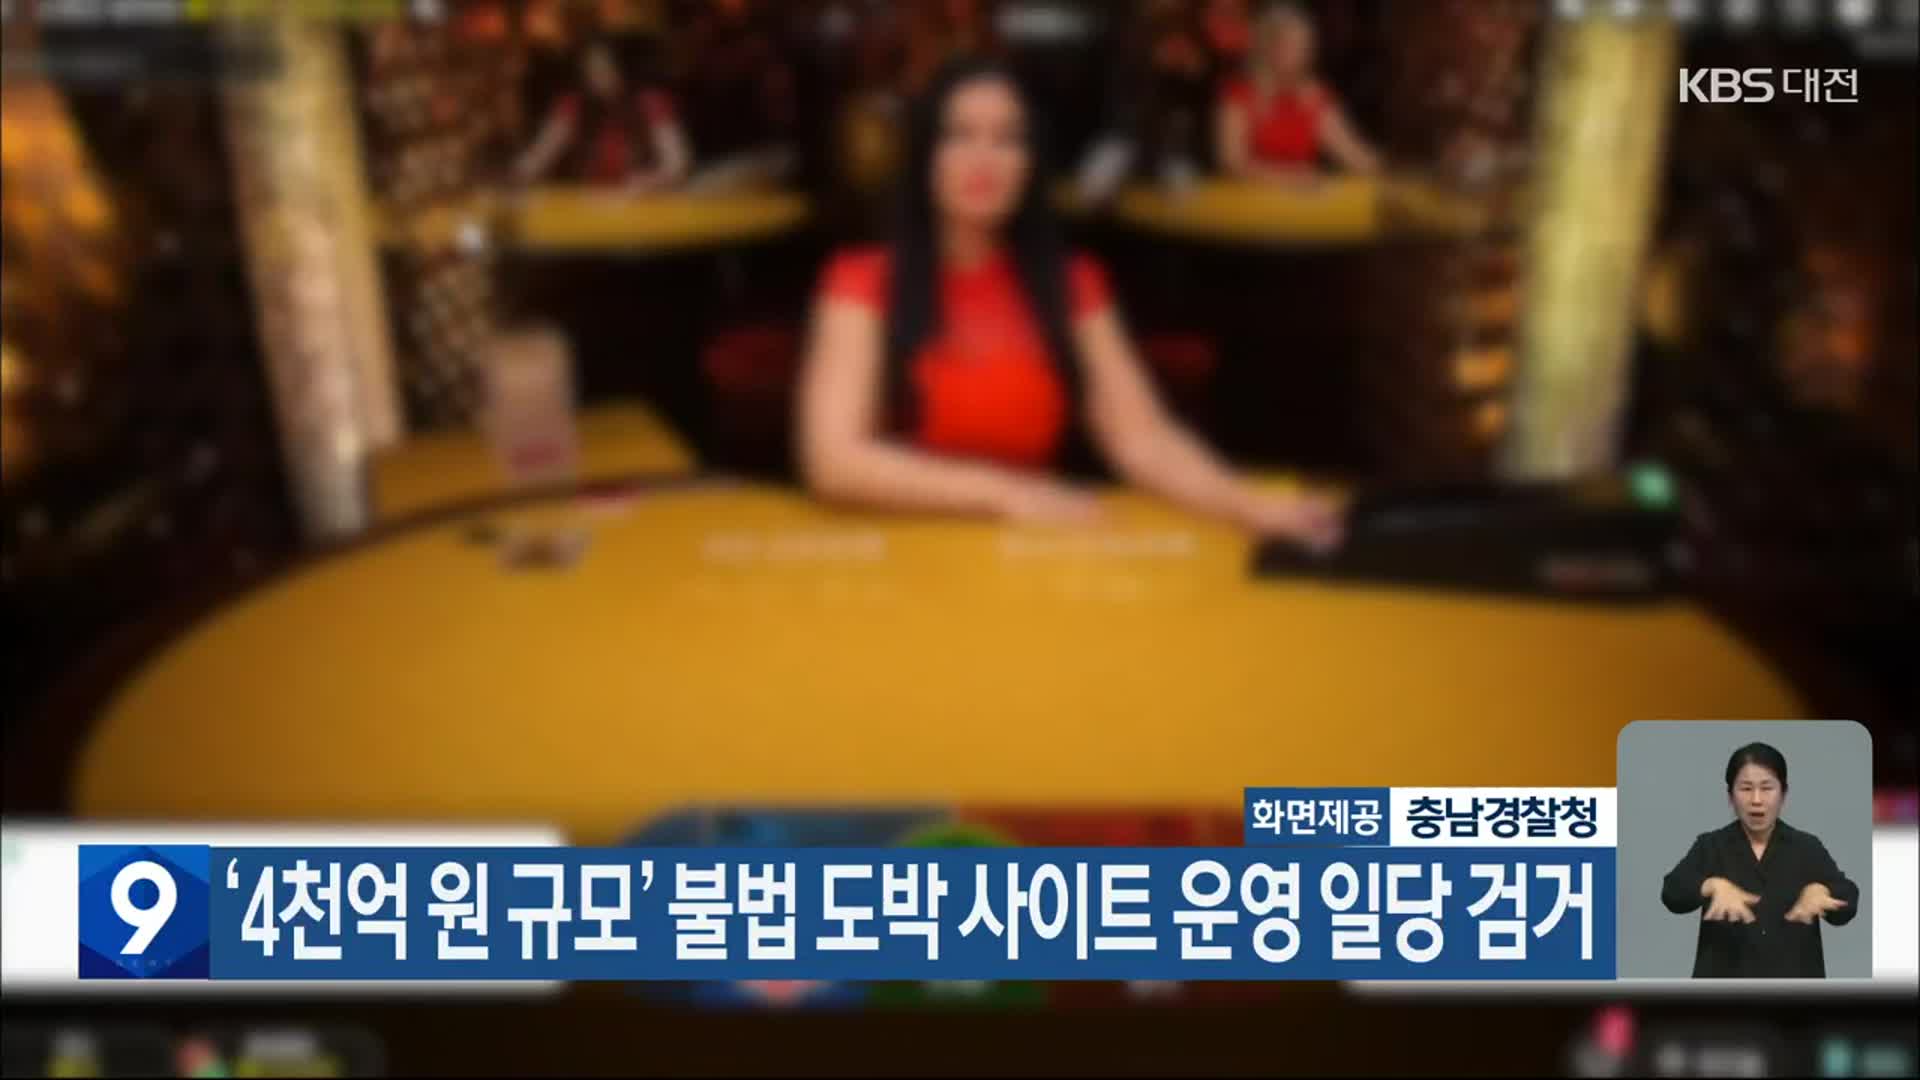 ‘4천억 원 규모’ 불법 도박 사이트 운영 일당 검거